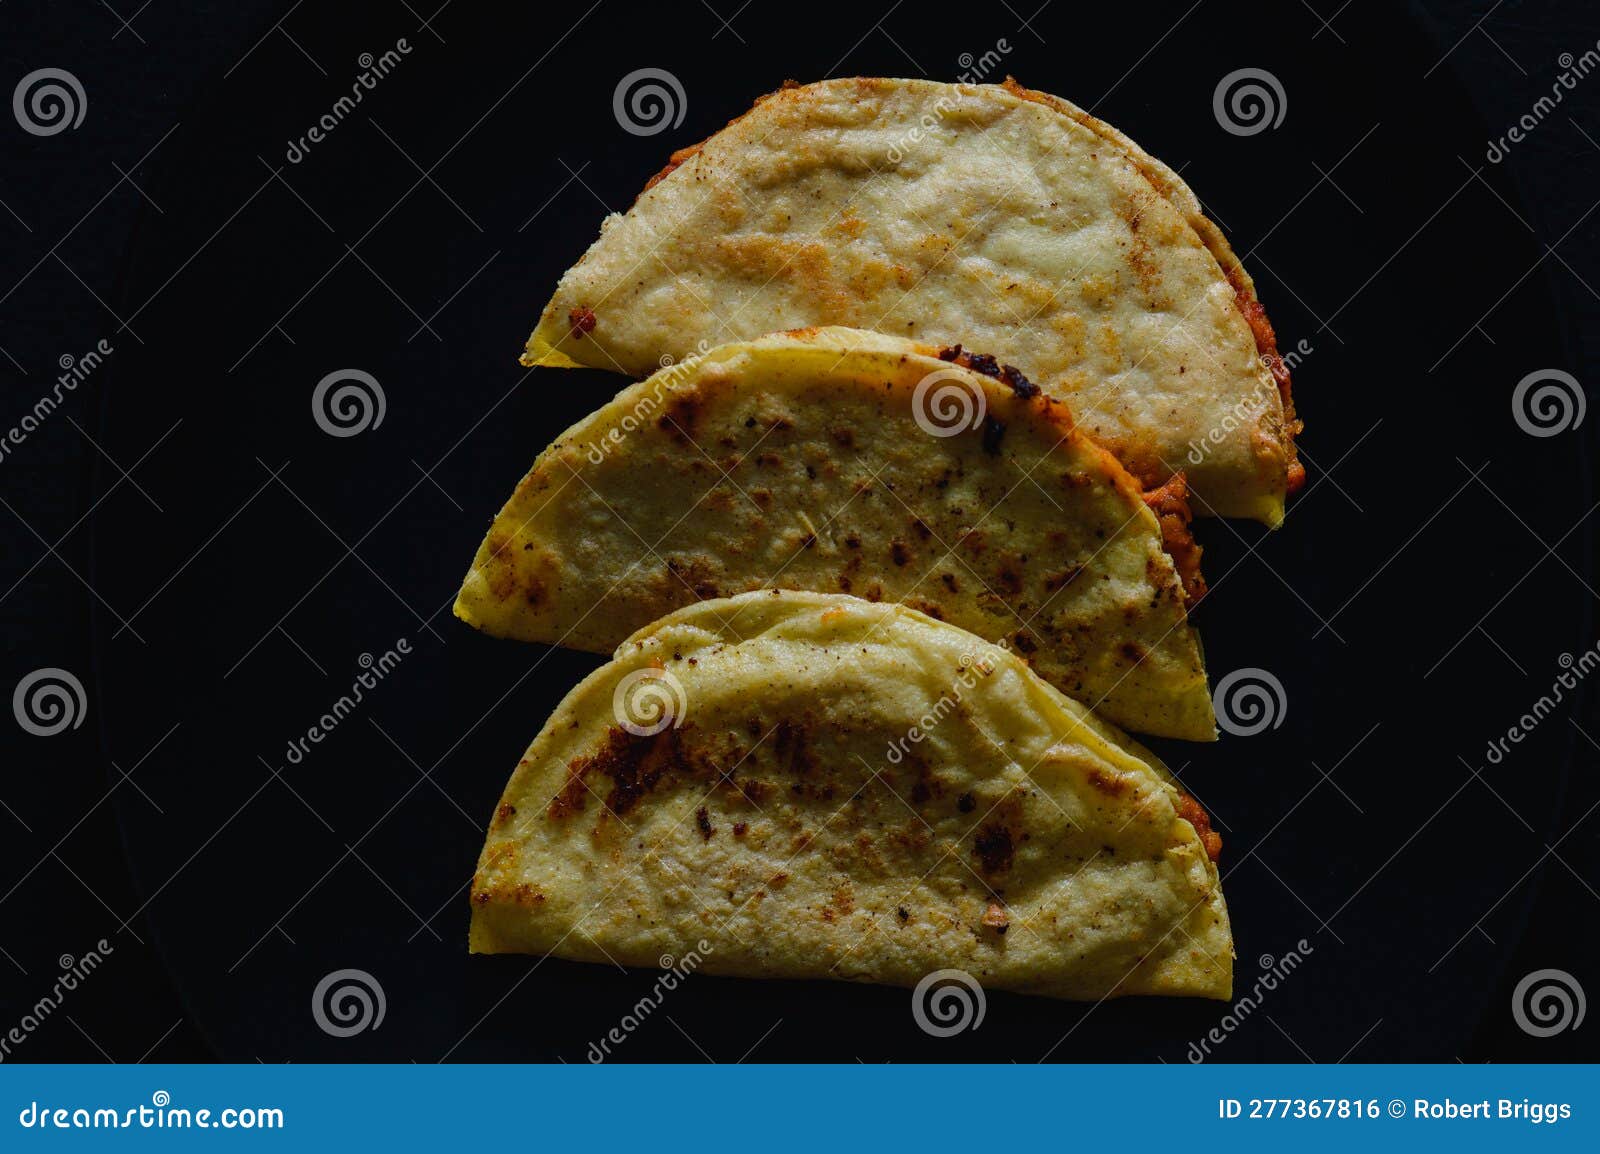 mashed potato and chorizo tacos dorados on black background